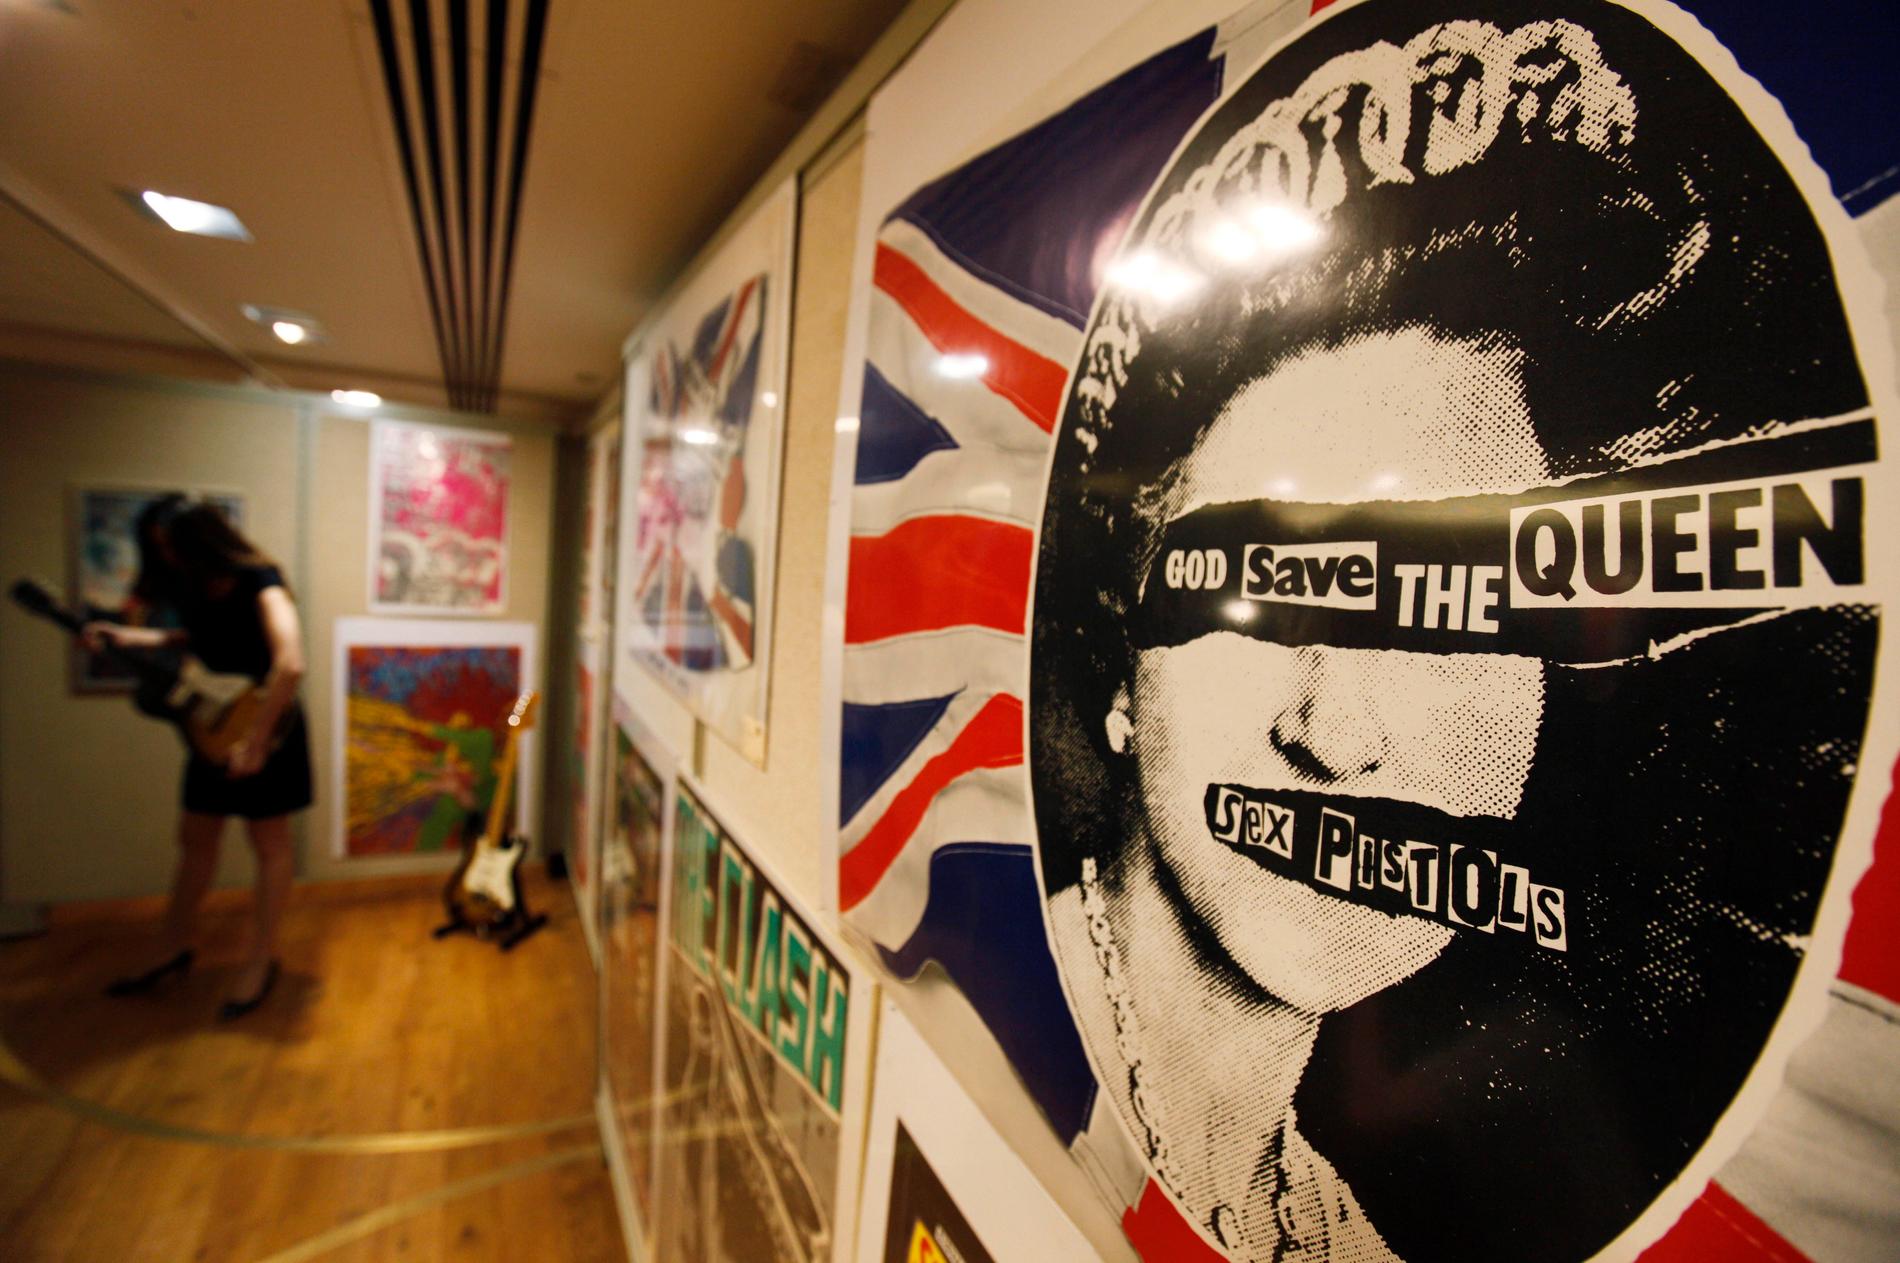 Sex Pistols "God Save the Queen" har fått ett lyft i samband med drottningen Elizabeths jubileum. Arkivbild.